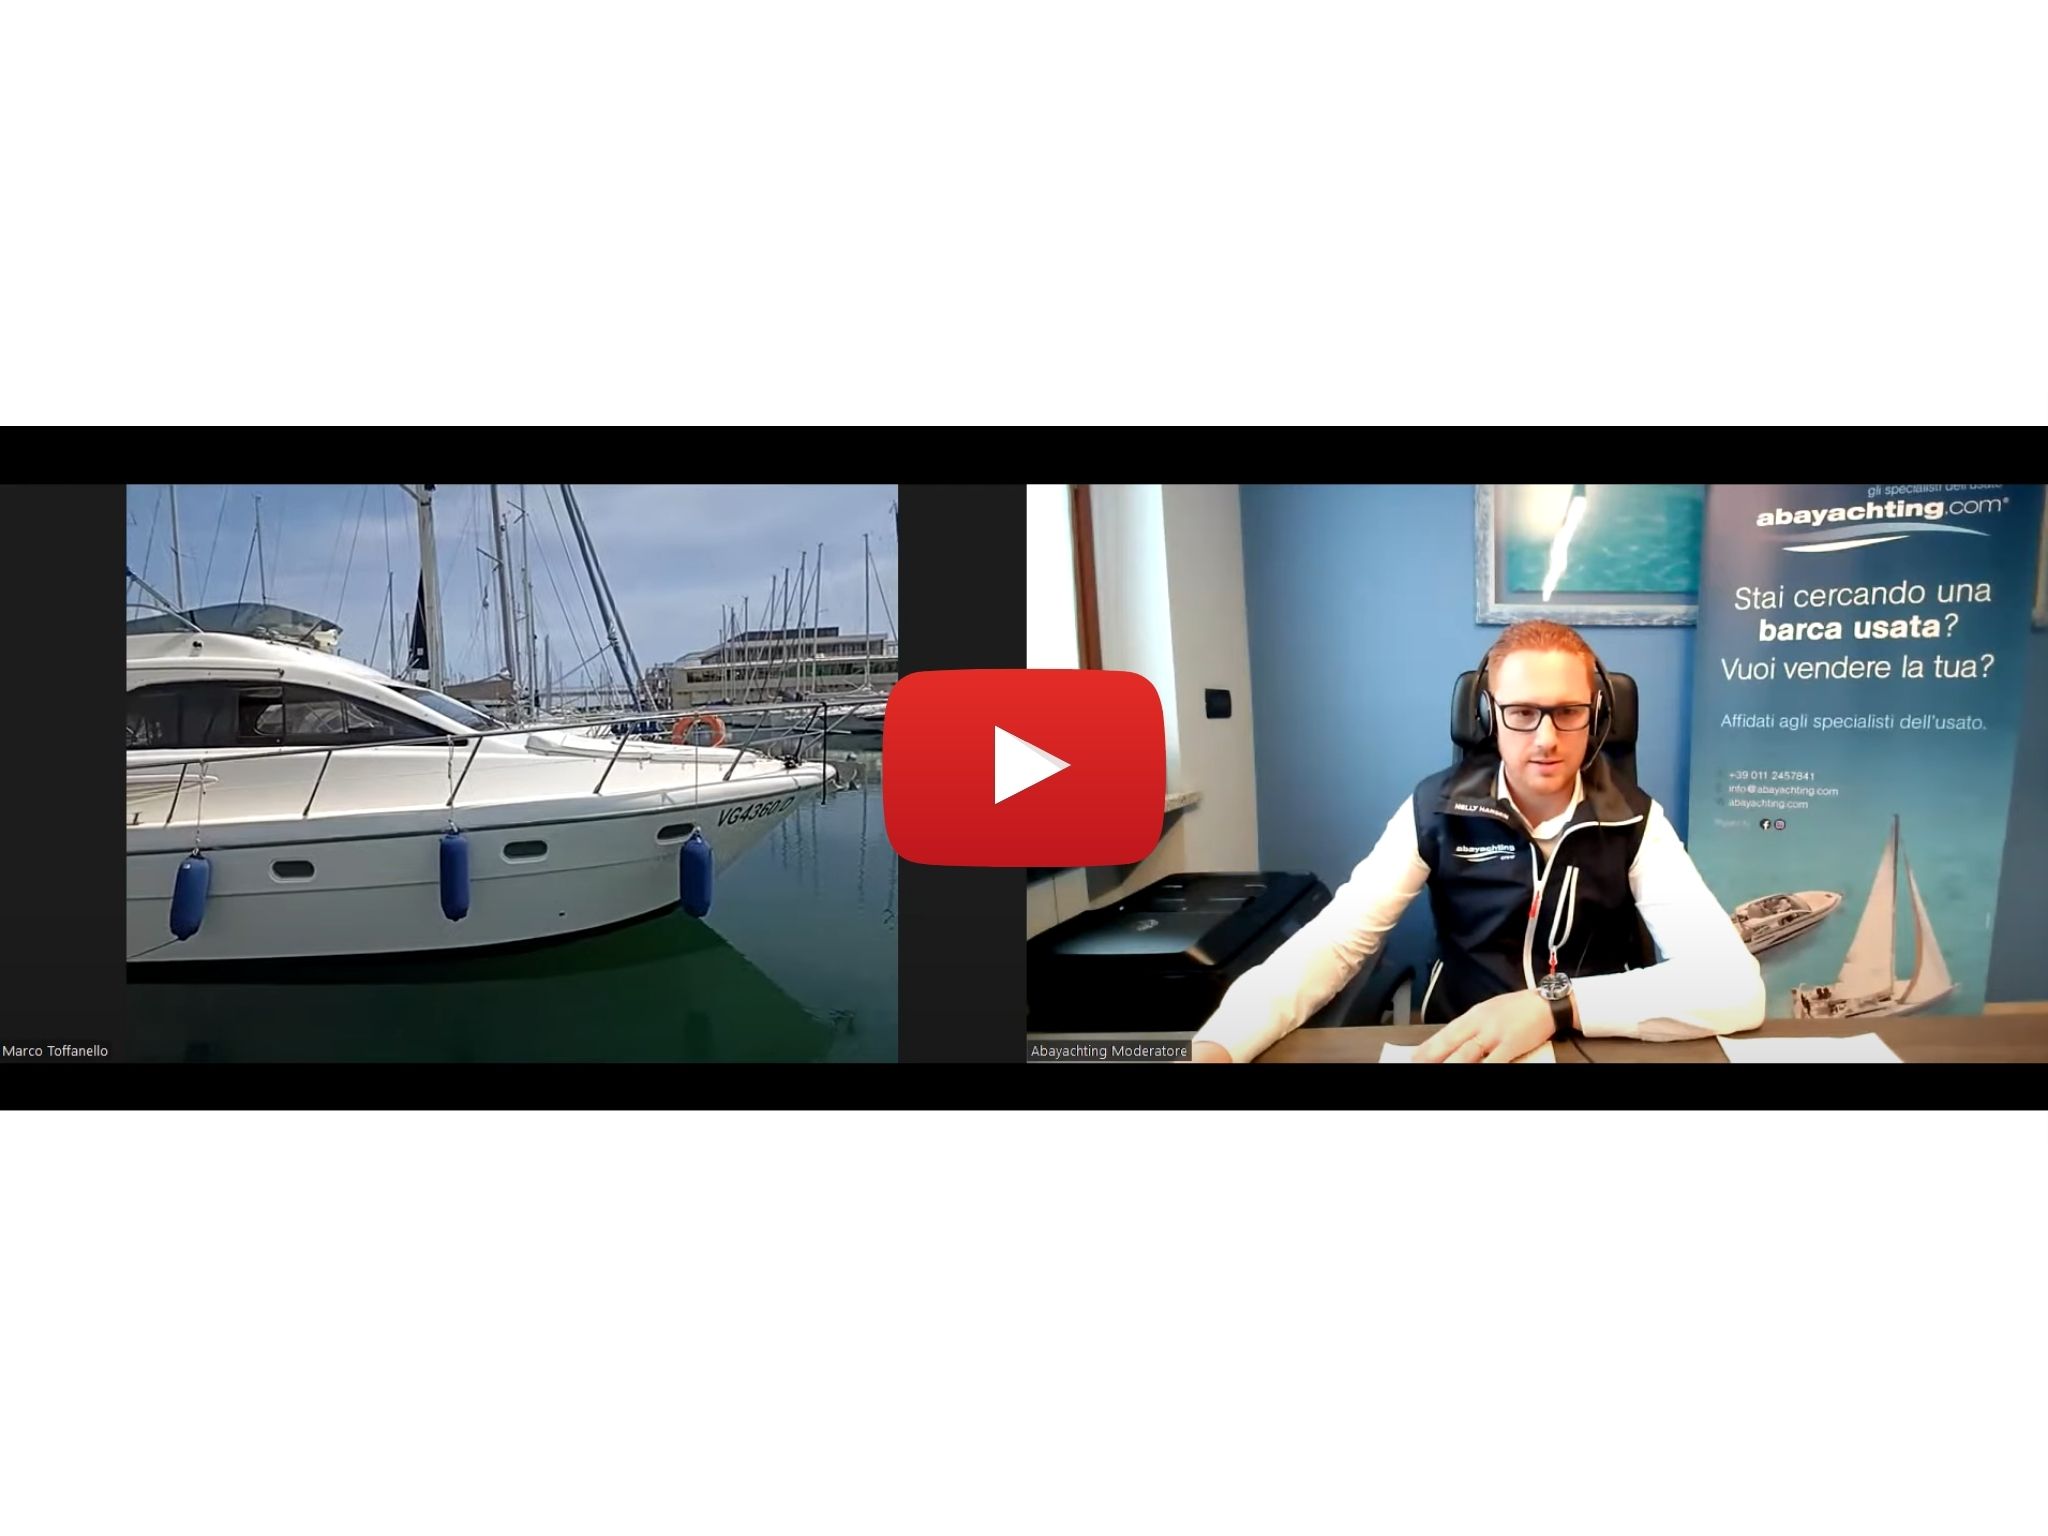 5. Live Used Boat Show Video | 22-23 Oktober 2022: eine neue Art, Ihr Boot zu verkaufen!